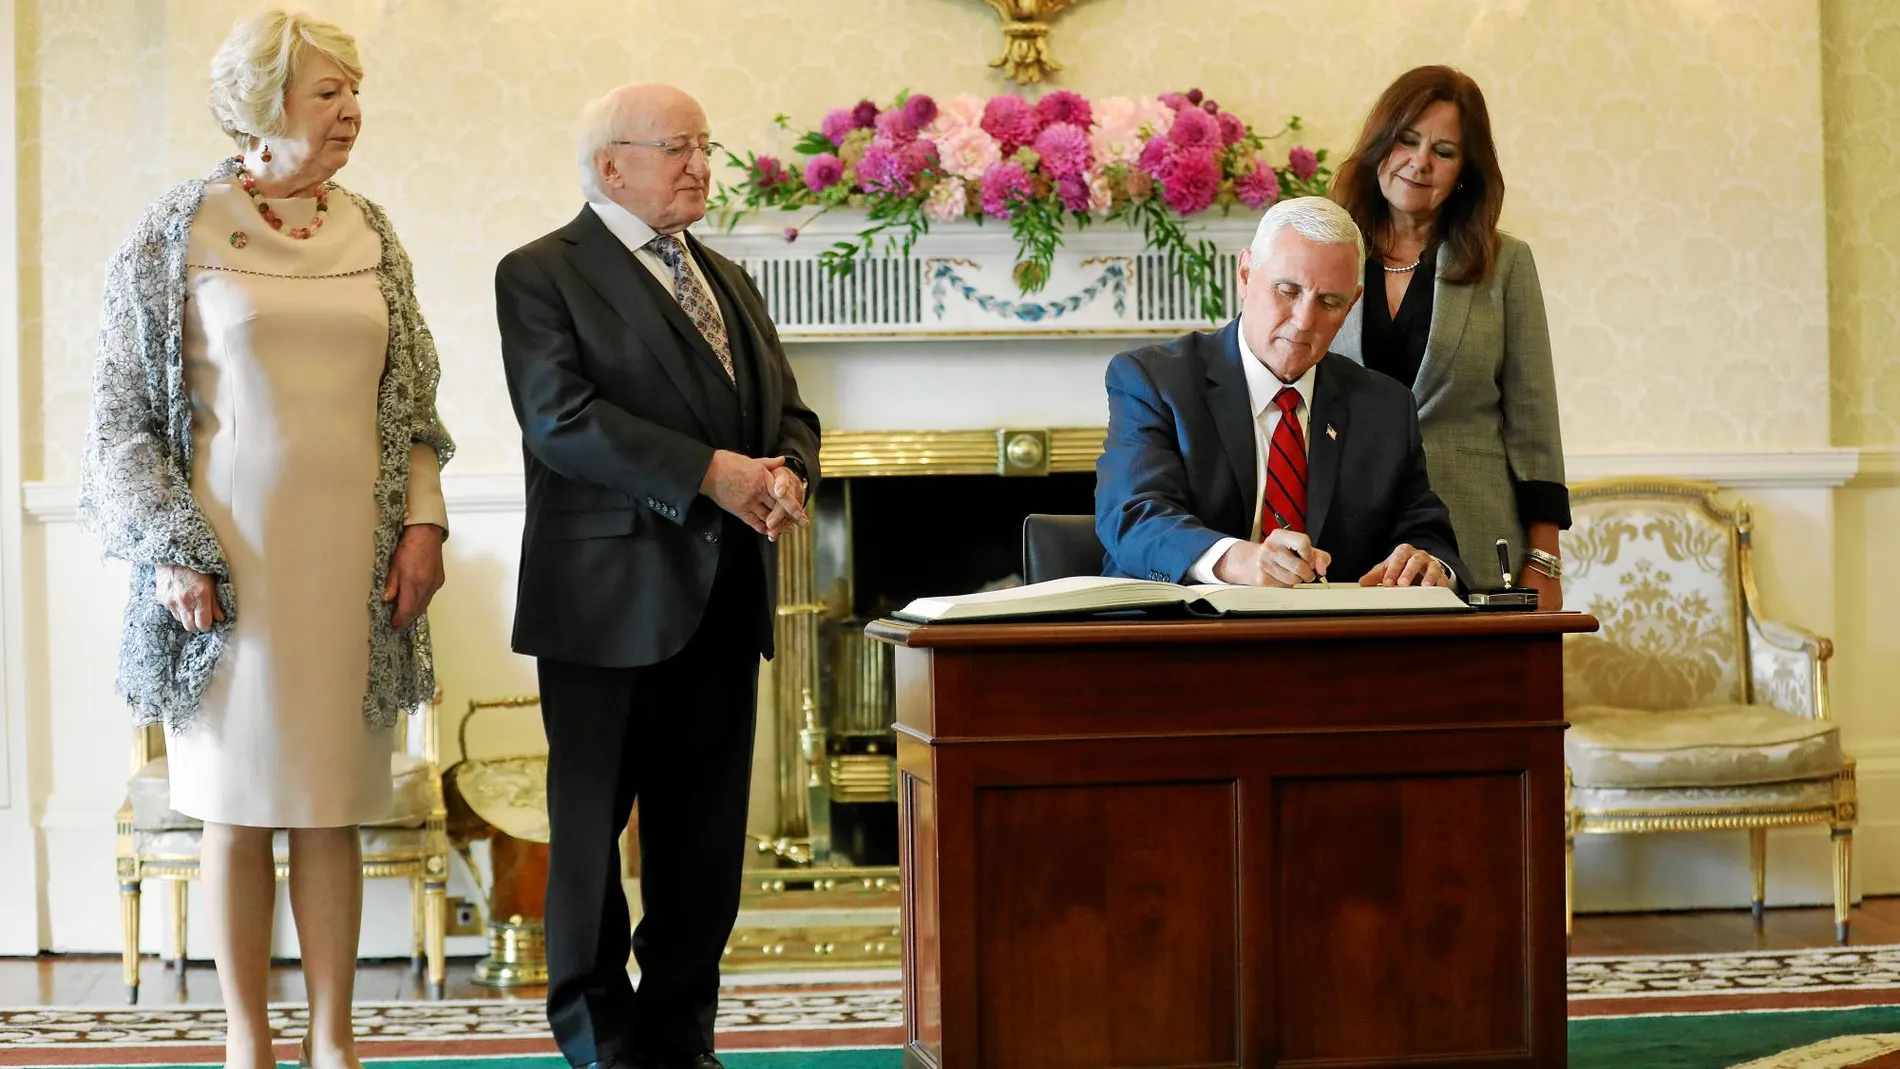 El vicepresidente de EE UU, Mike Pence, firma en el libro de honor del palacio del presidente irlandés, ayer en Dublín